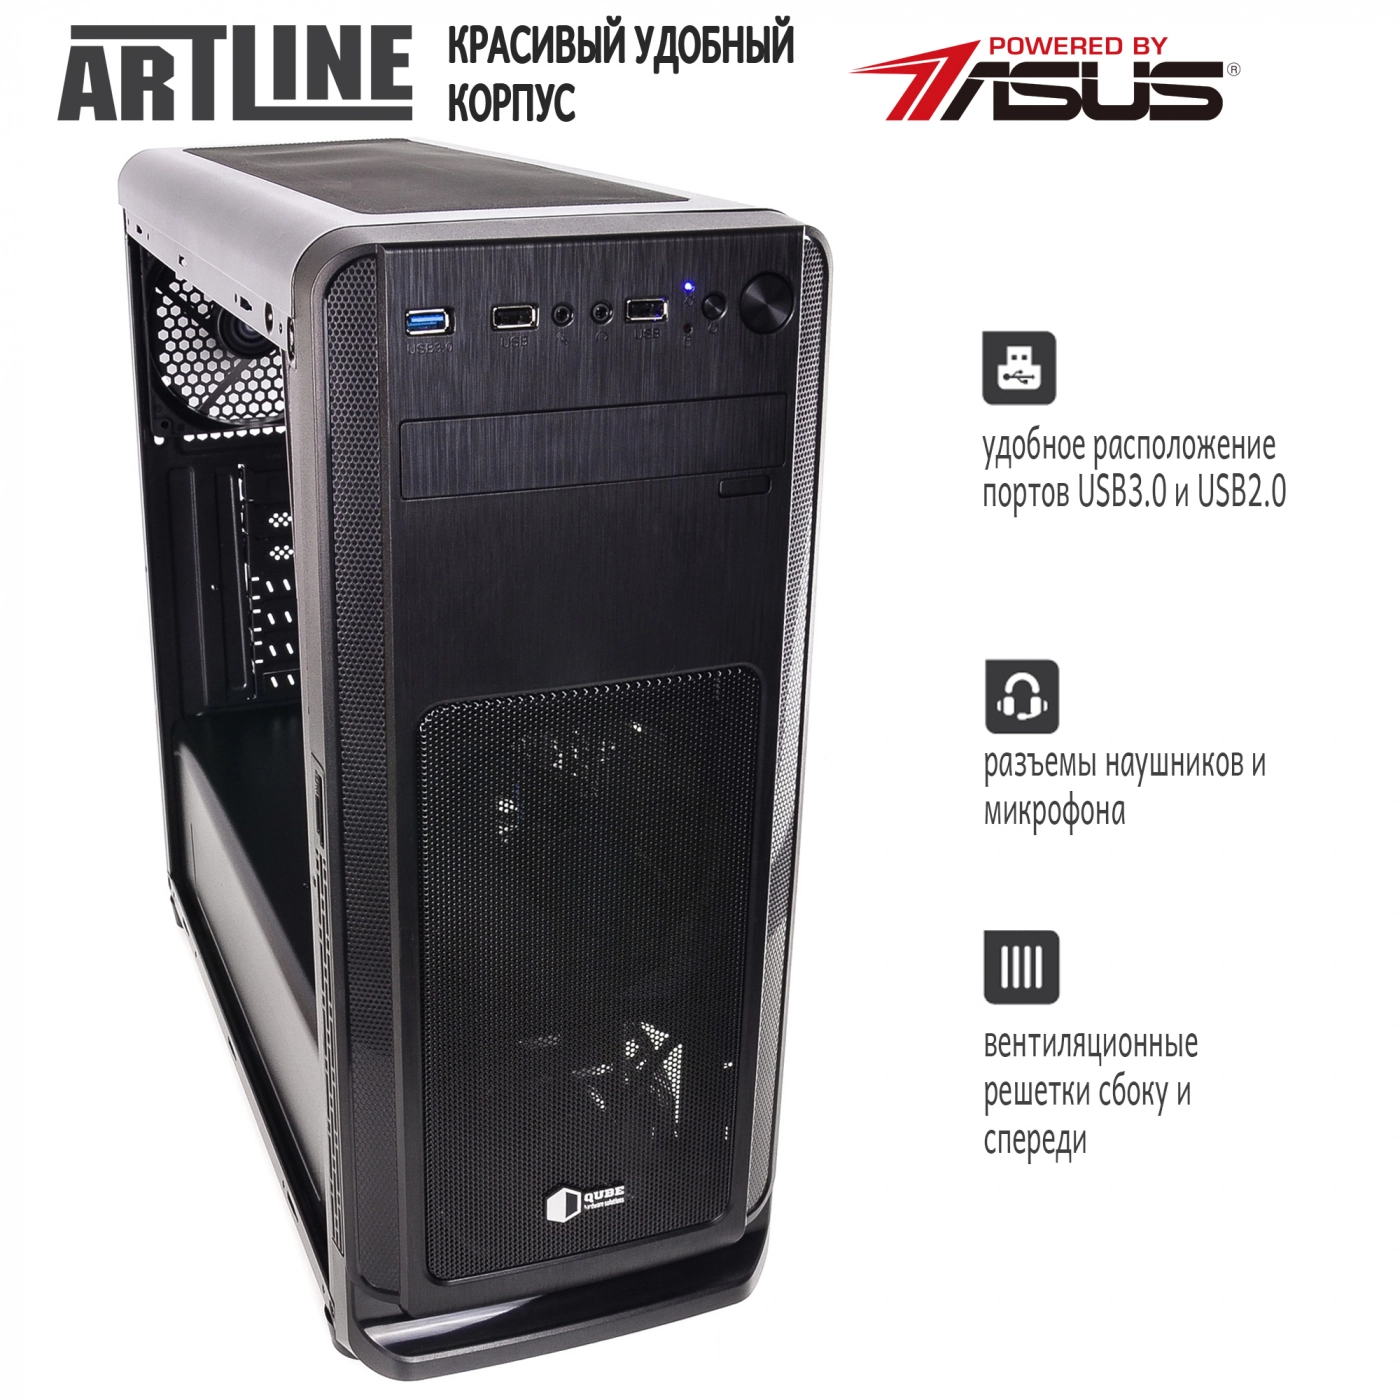 Купить Сервер ARTLINE Business T17v12 - фото 4